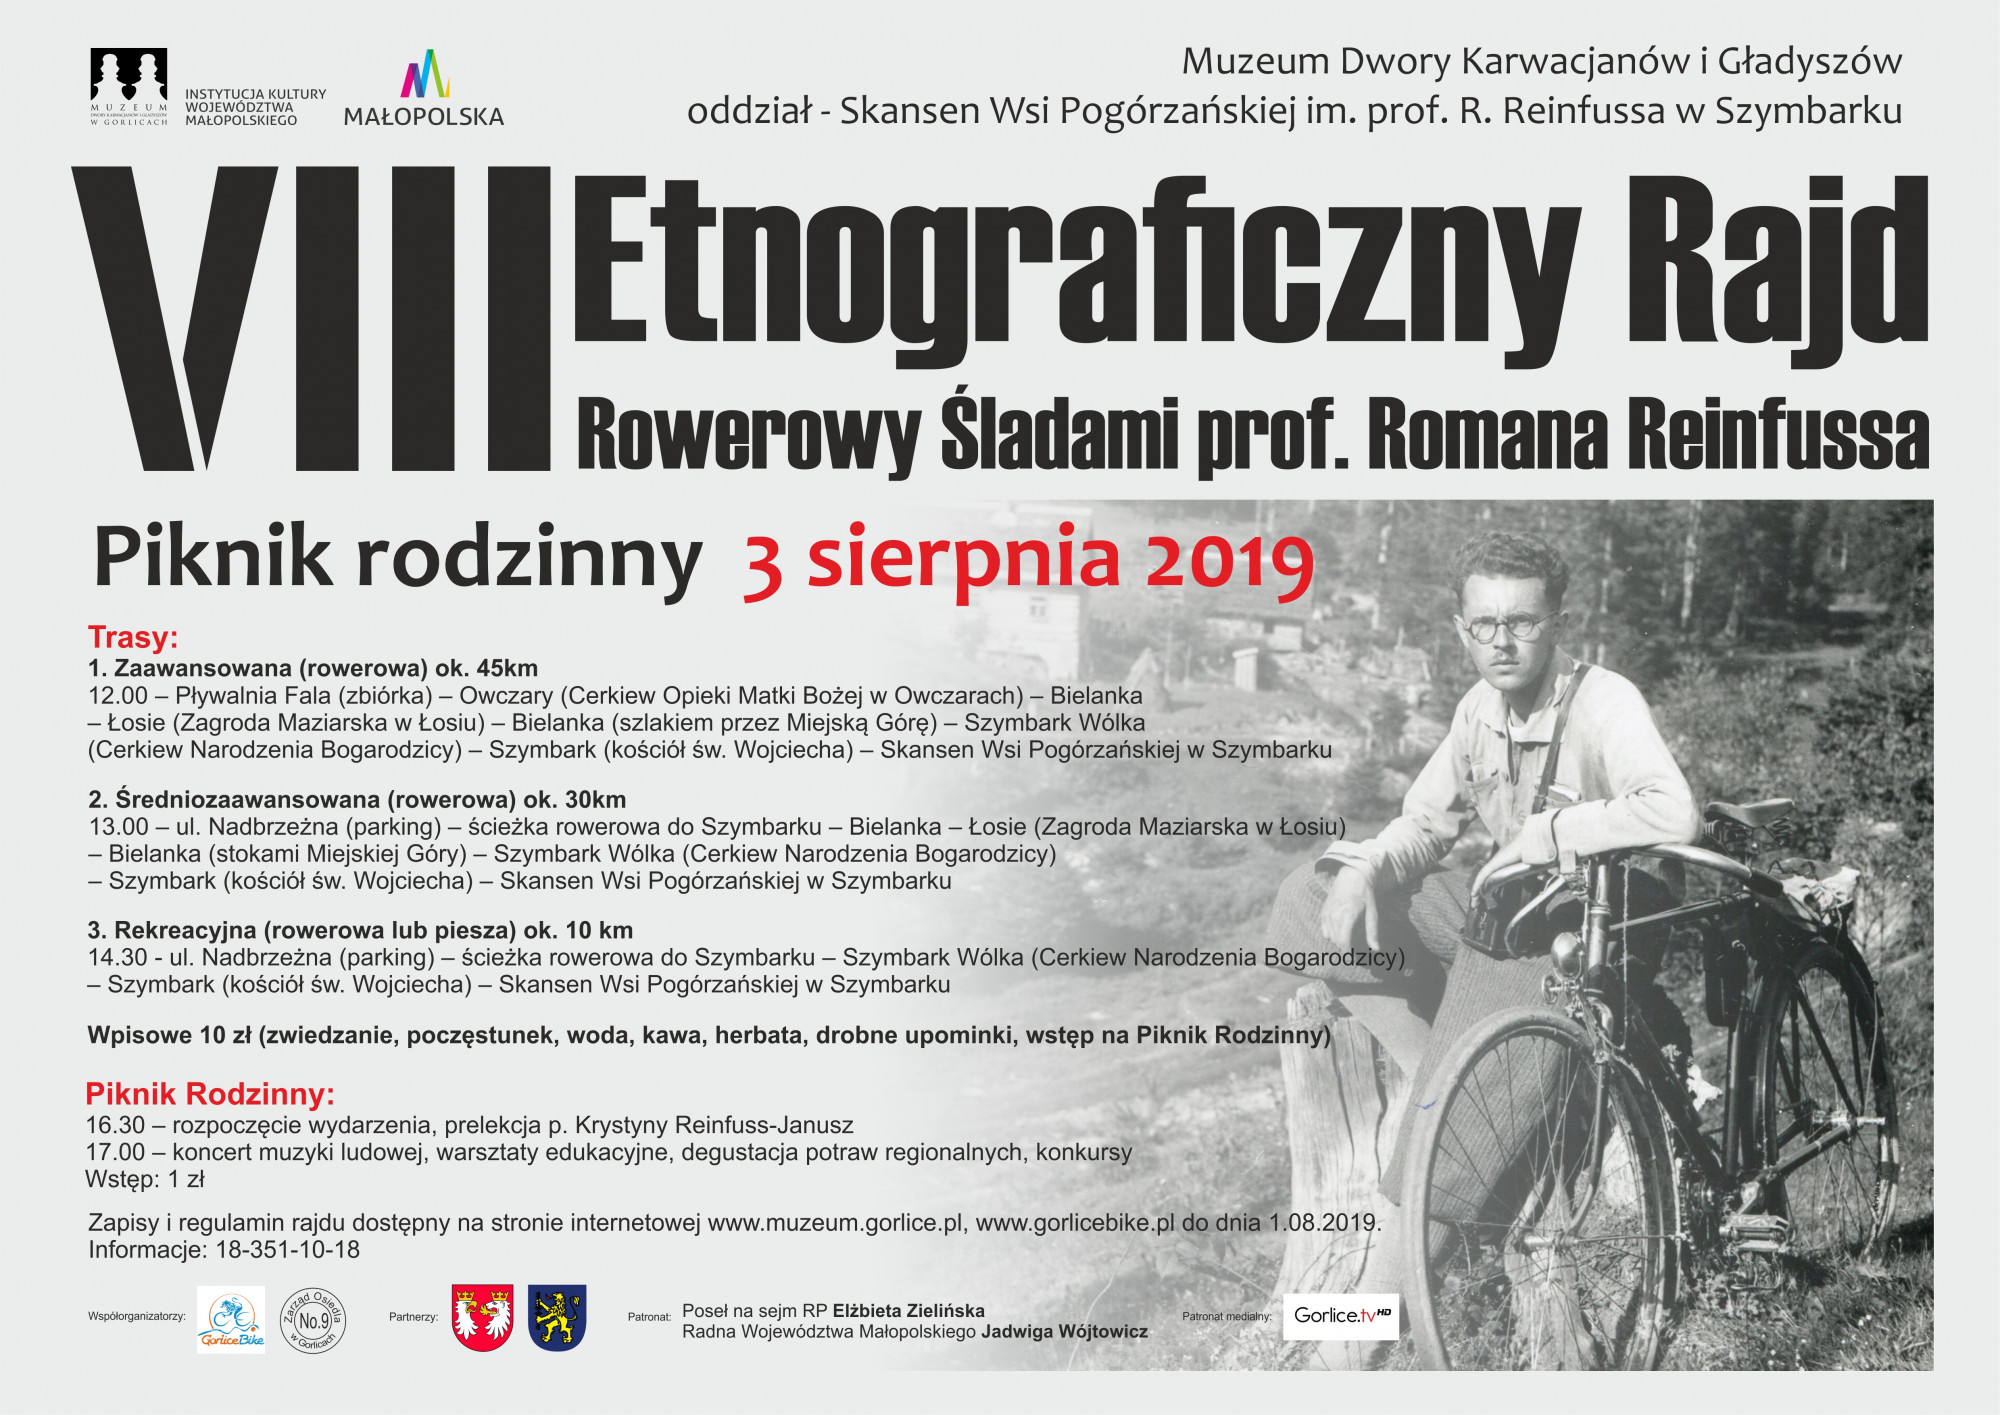 VIII Etnograficzny Rajd Rowerowy Śladami prof. Romana Reinfussa